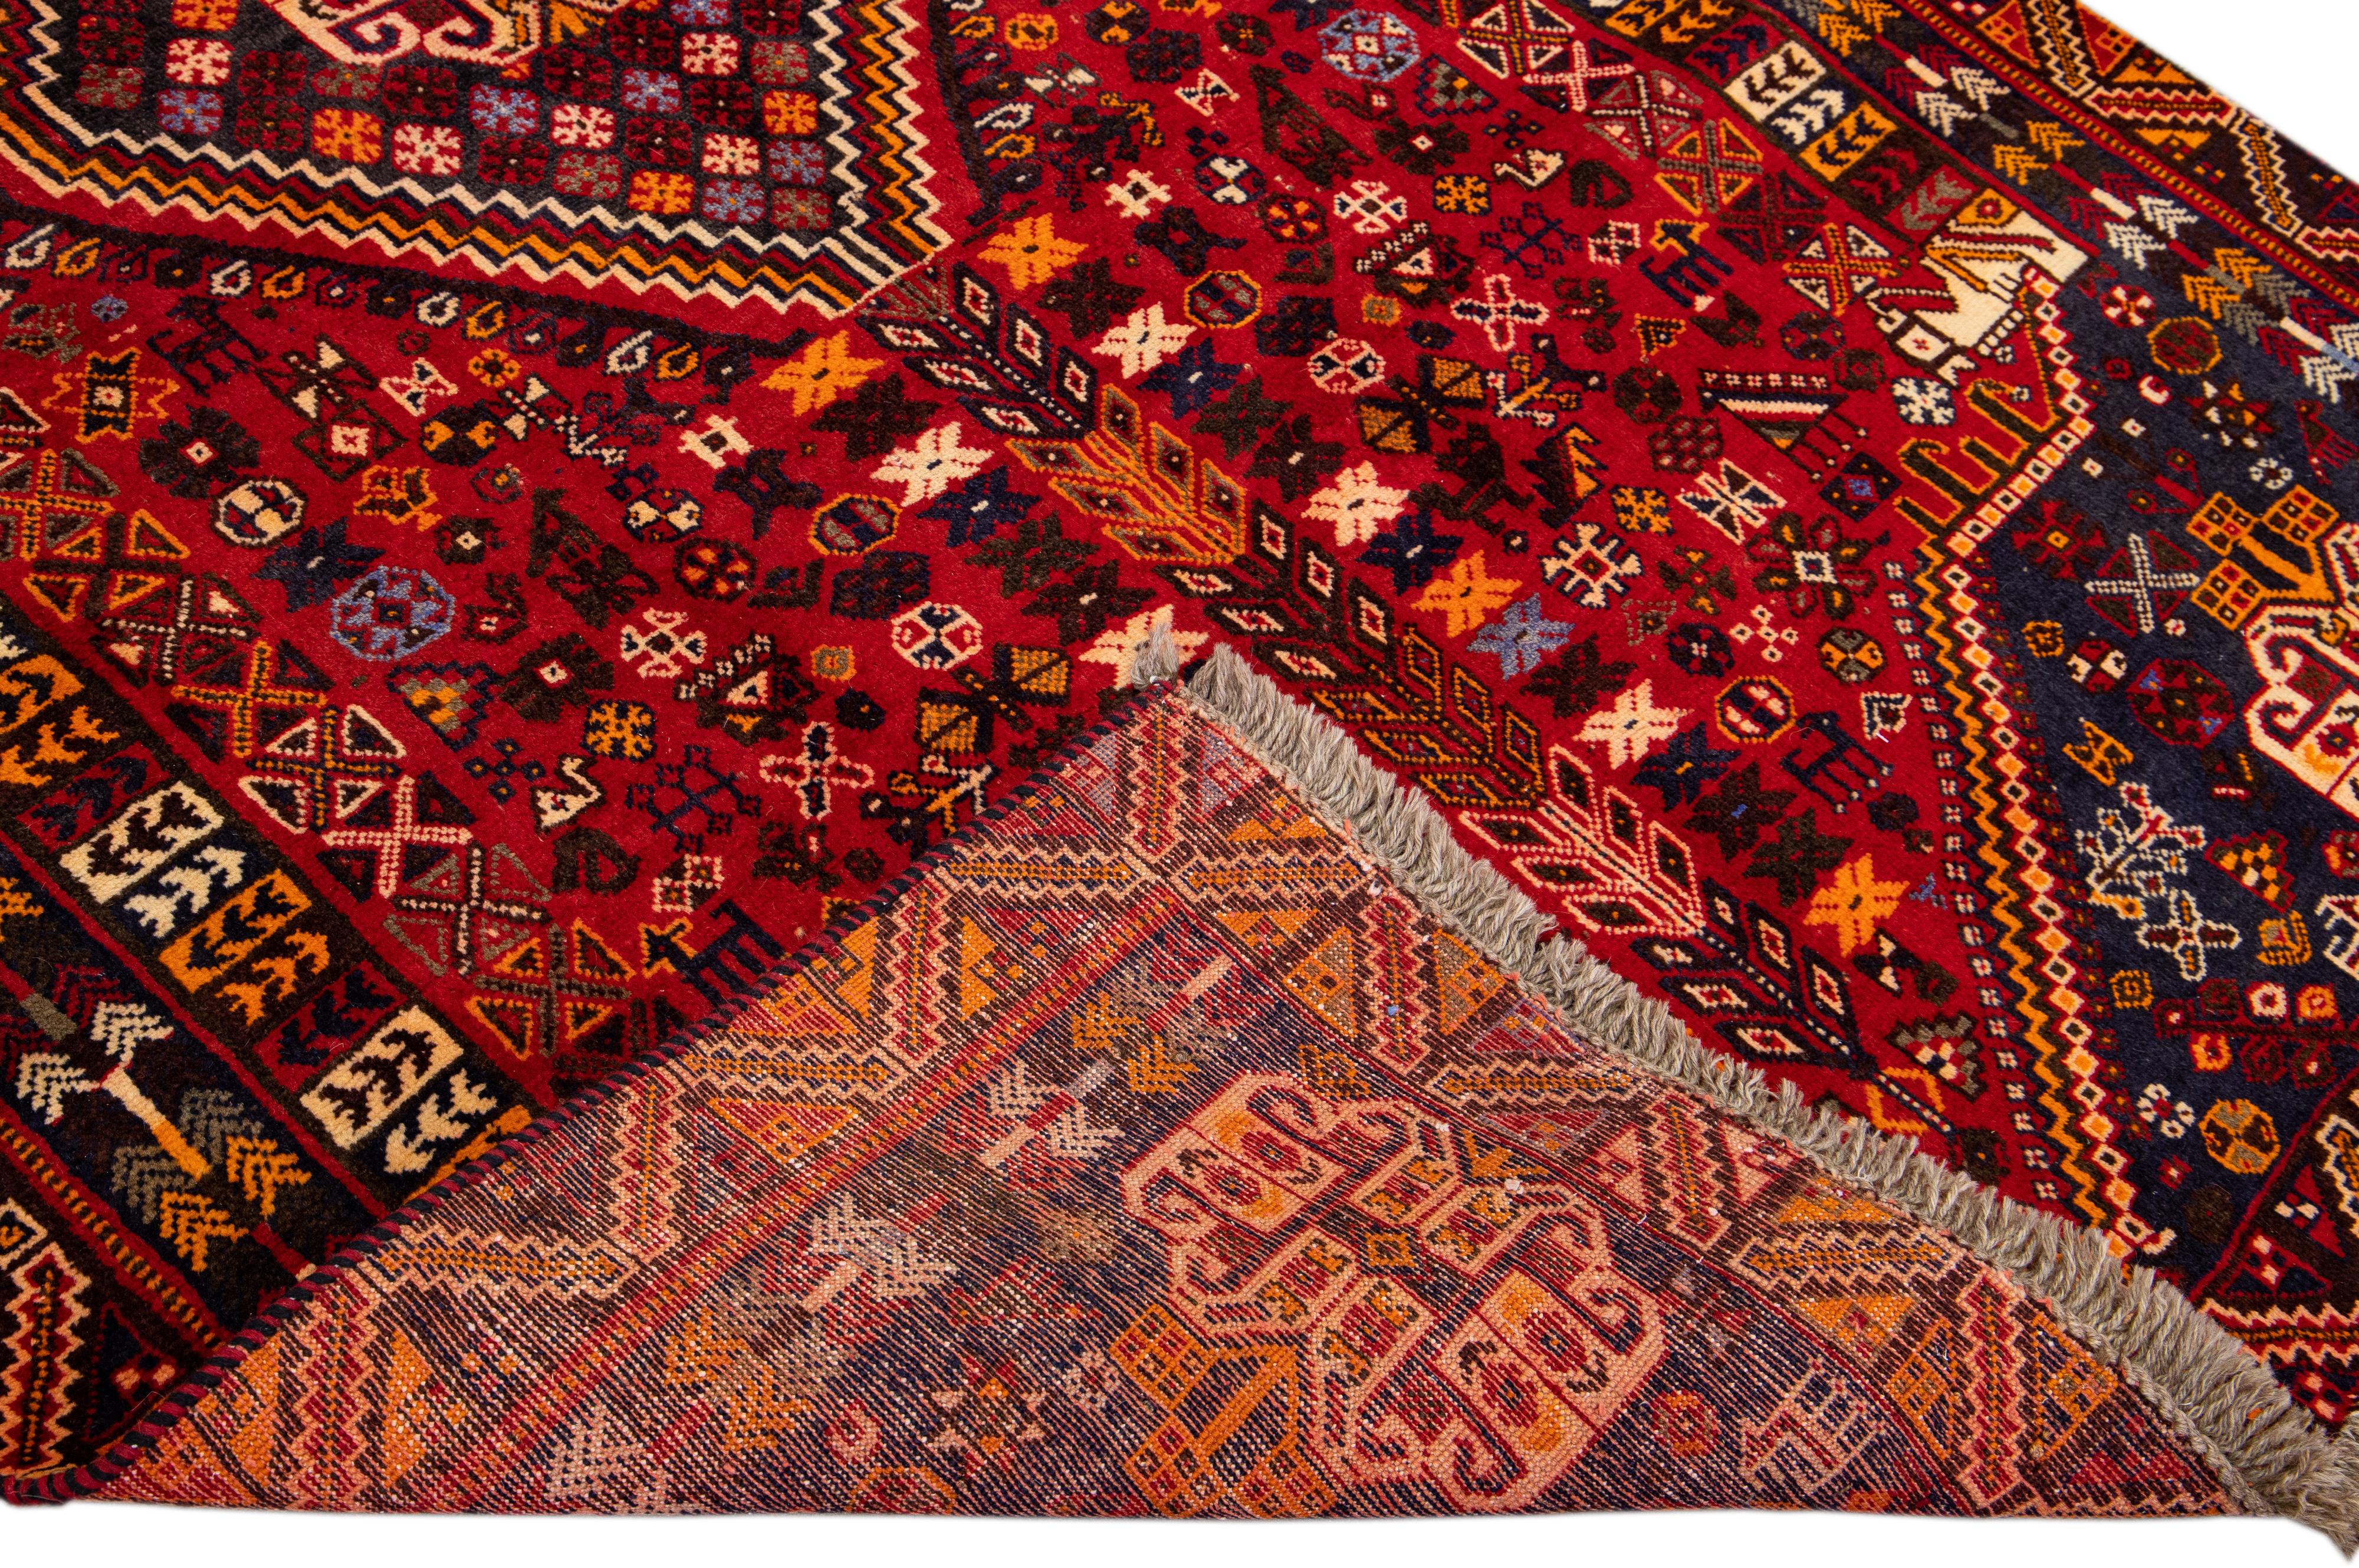 Schöner handgeknüpfter Afshar Vintage-Wollläufer mit rotem Feld. Dieser Afshar-Teppich hat einen braunen Rahmen und mehrfarbige Akzente in einem wunderschönen geometrischen Medaillon-Blumenmuster.

Dieser Teppich misst: 5'2 Zoll